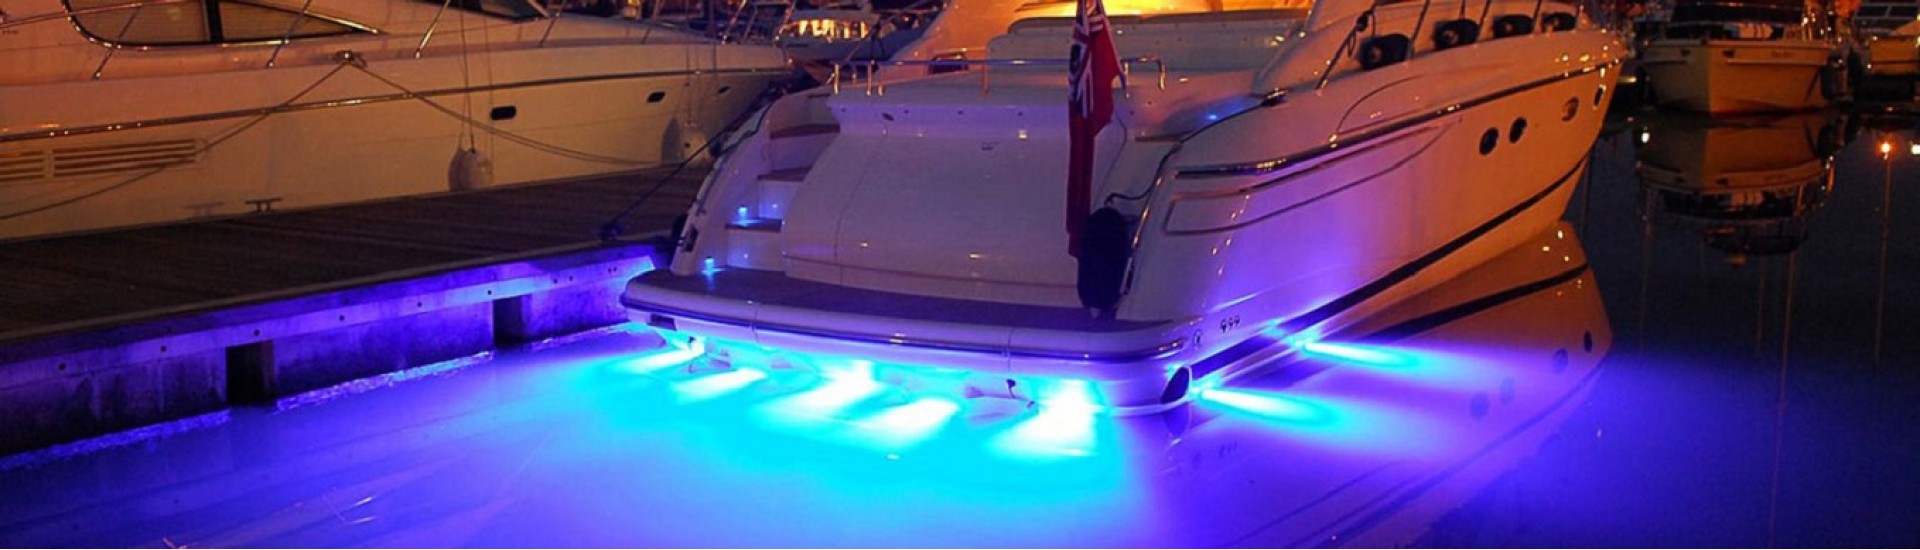 چراغ قایق مزدا 6 GT 2021 